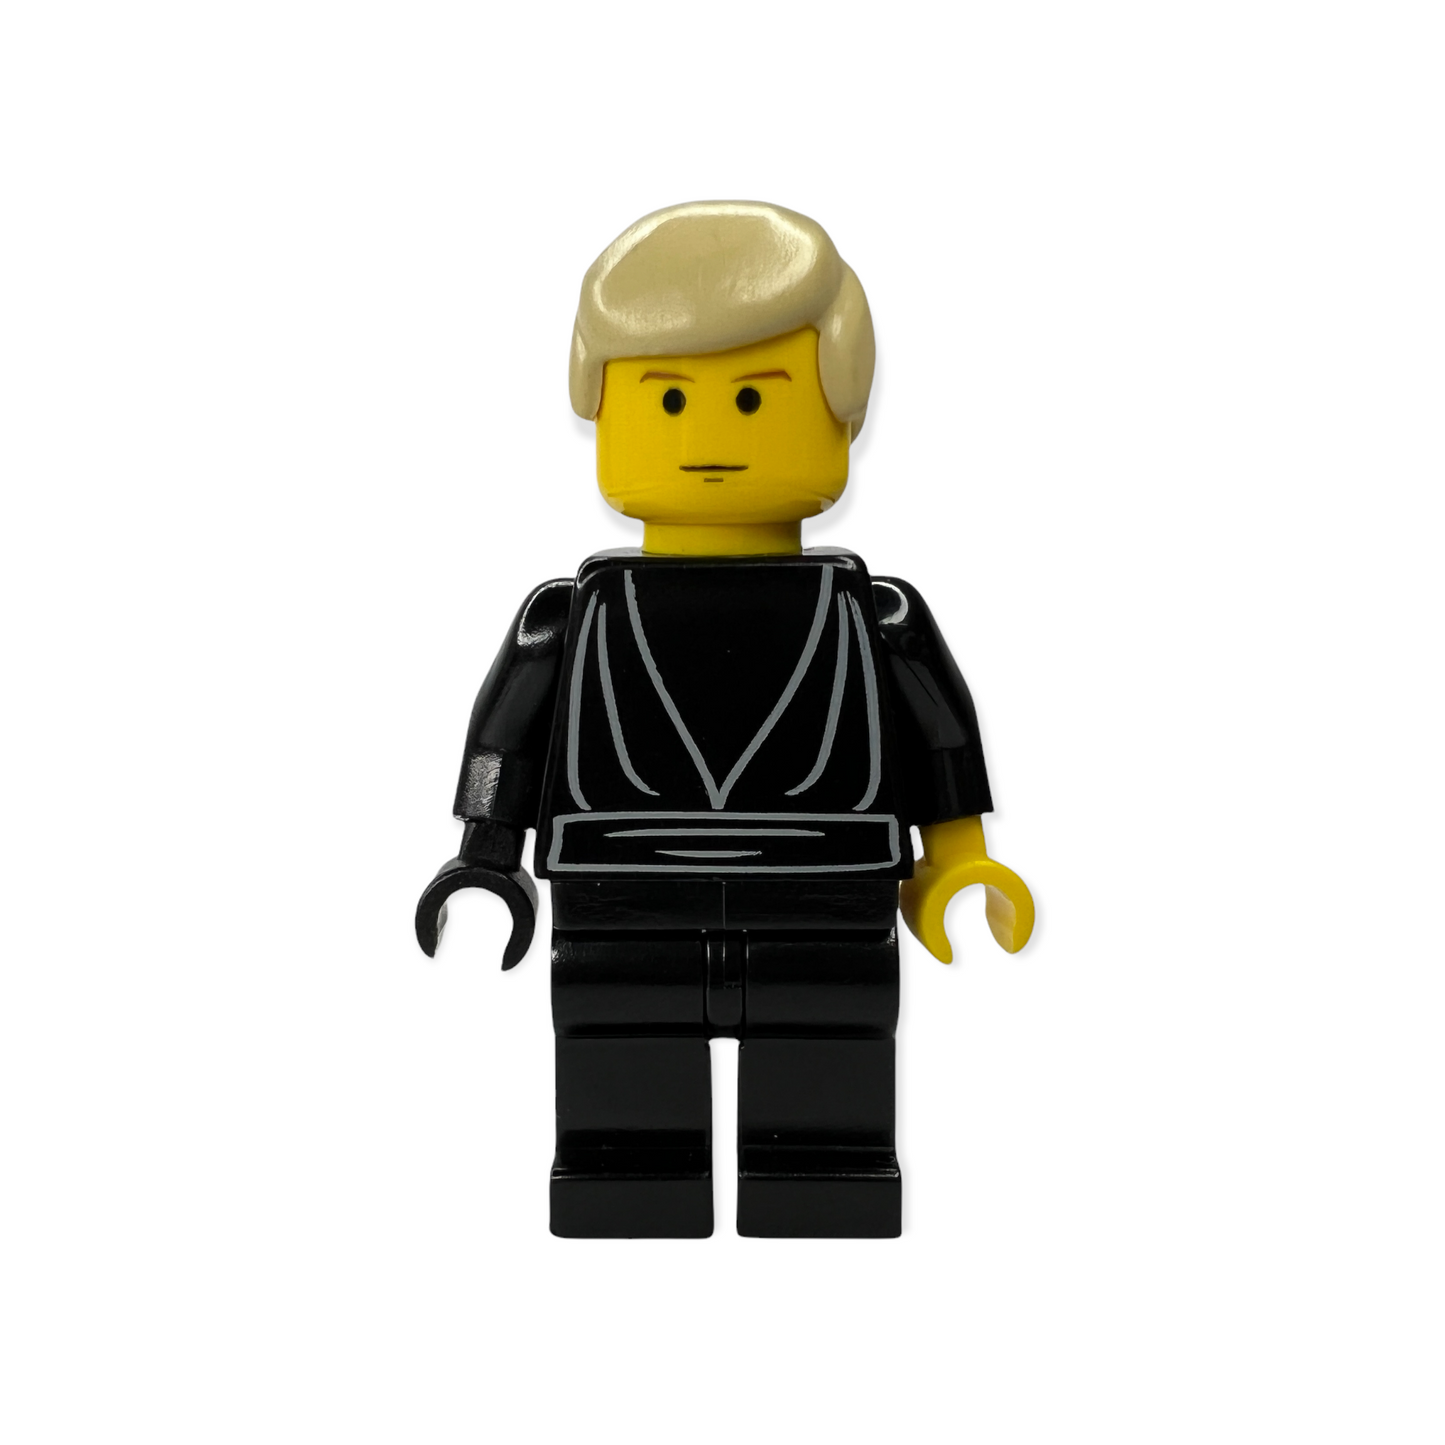 LEGO Minifigur sw0068 - Luke Skywalker